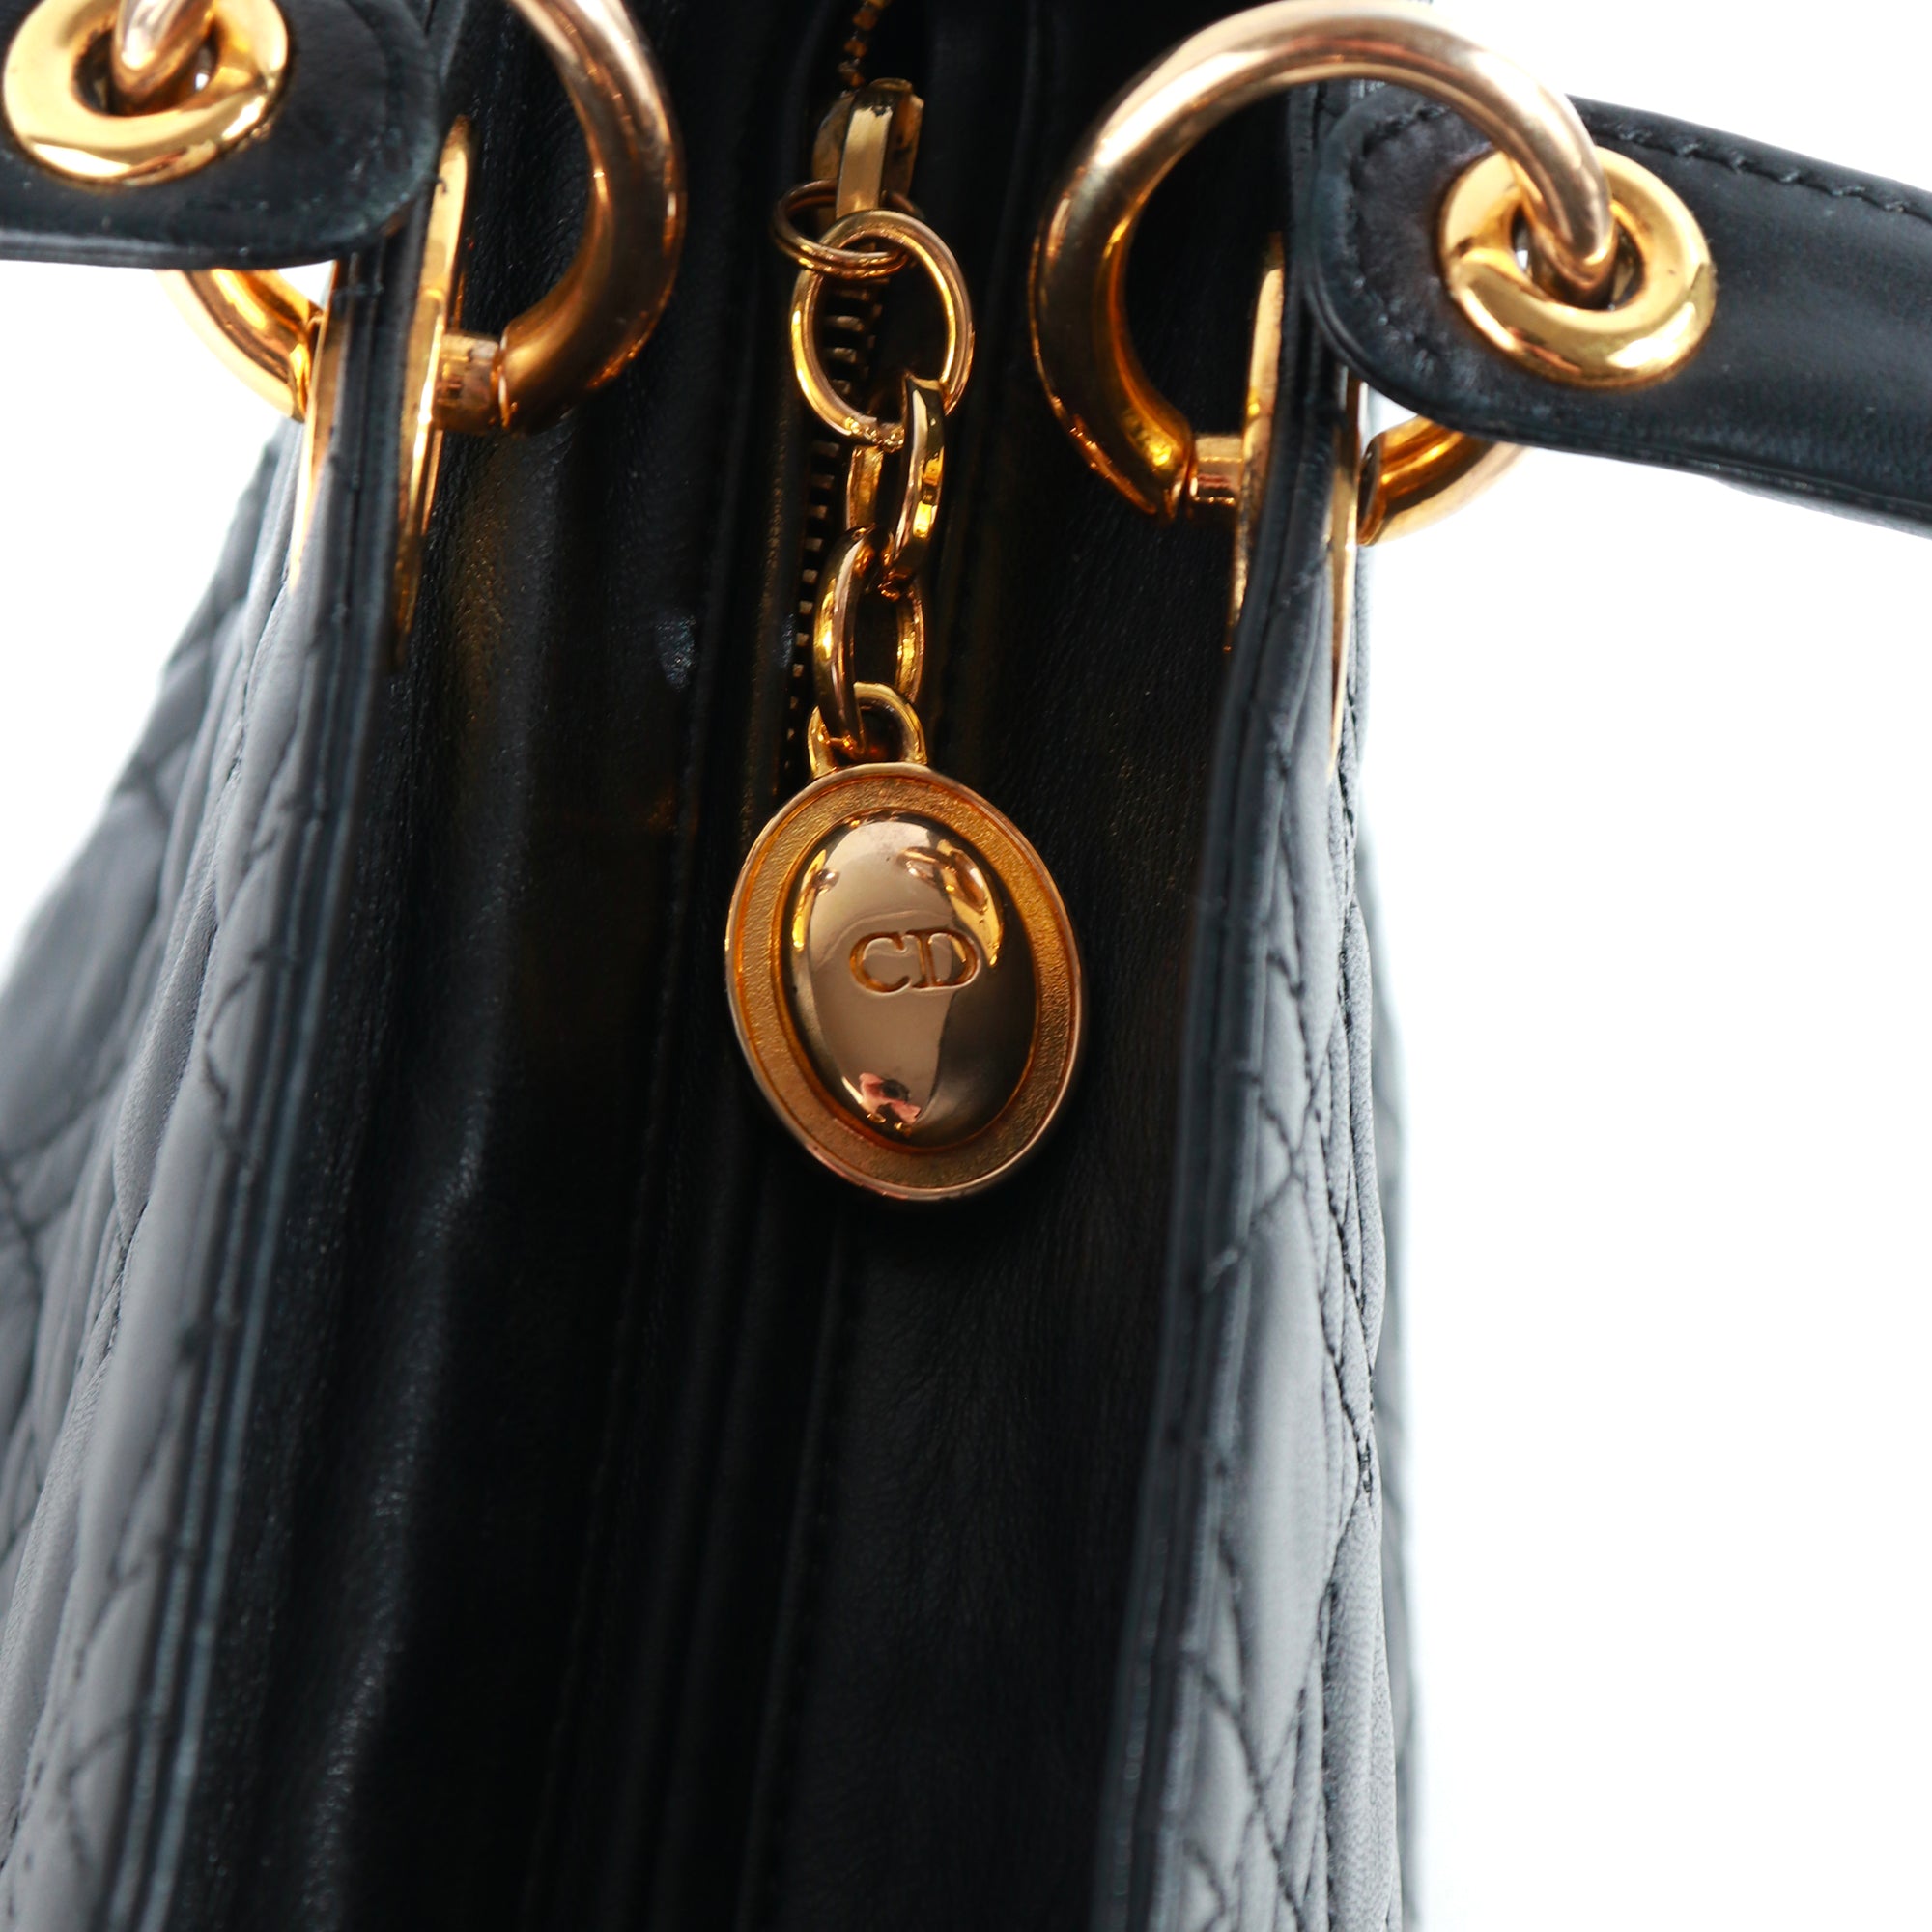 DIOR - Sac à main Lady Dior medium en cuir noir vintage